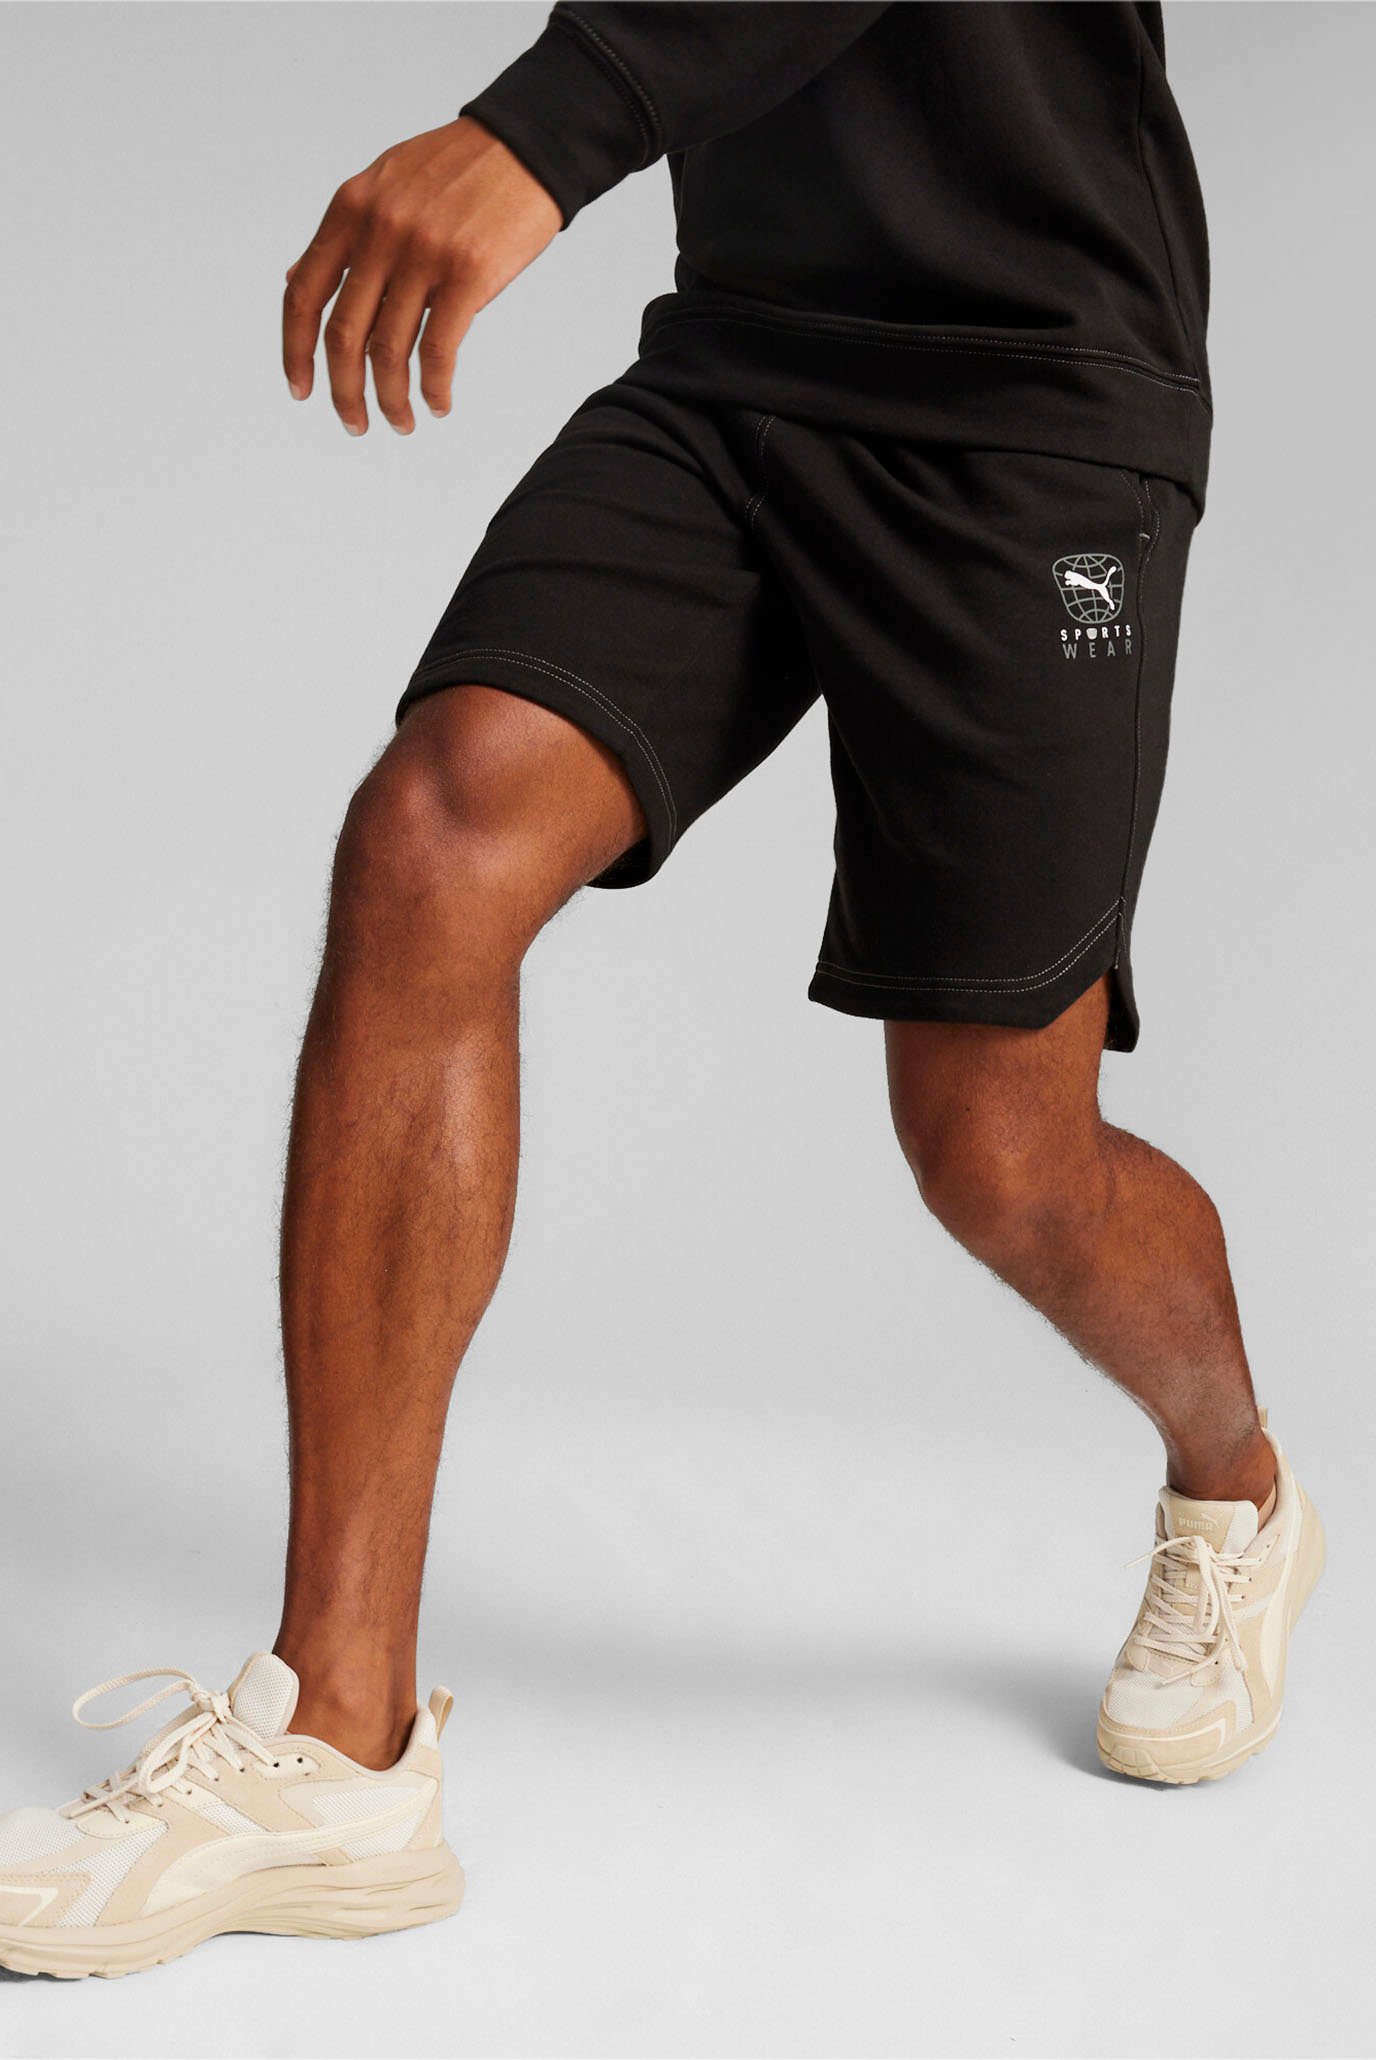 Чоловічі чорні шорти BETTER SPORTSWEAR Men's Shorts 1